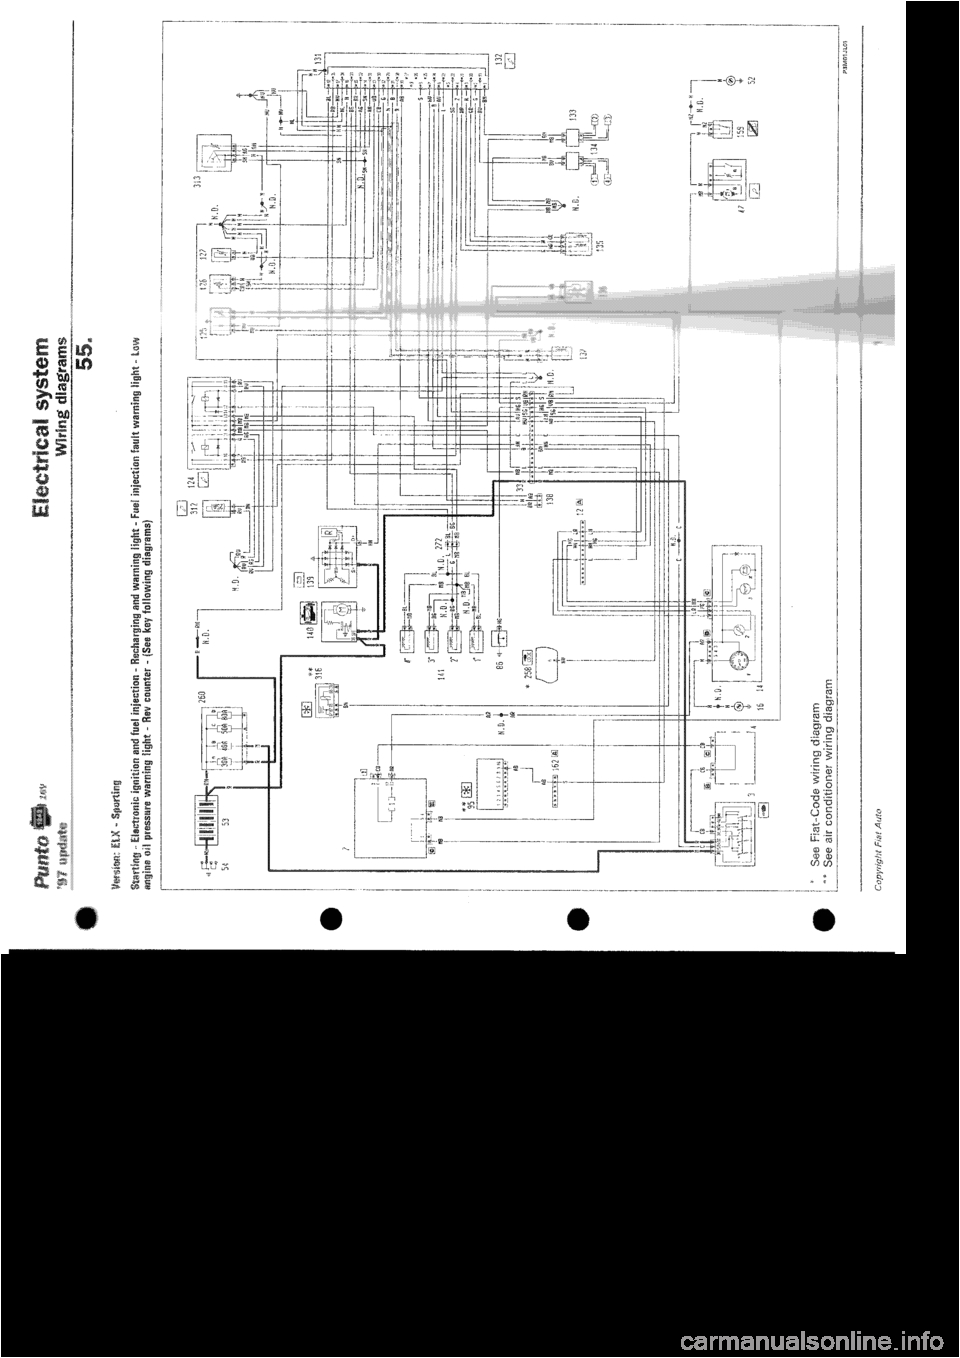 fiat punto 1997 176 1 g wiring diagrams workshop manual